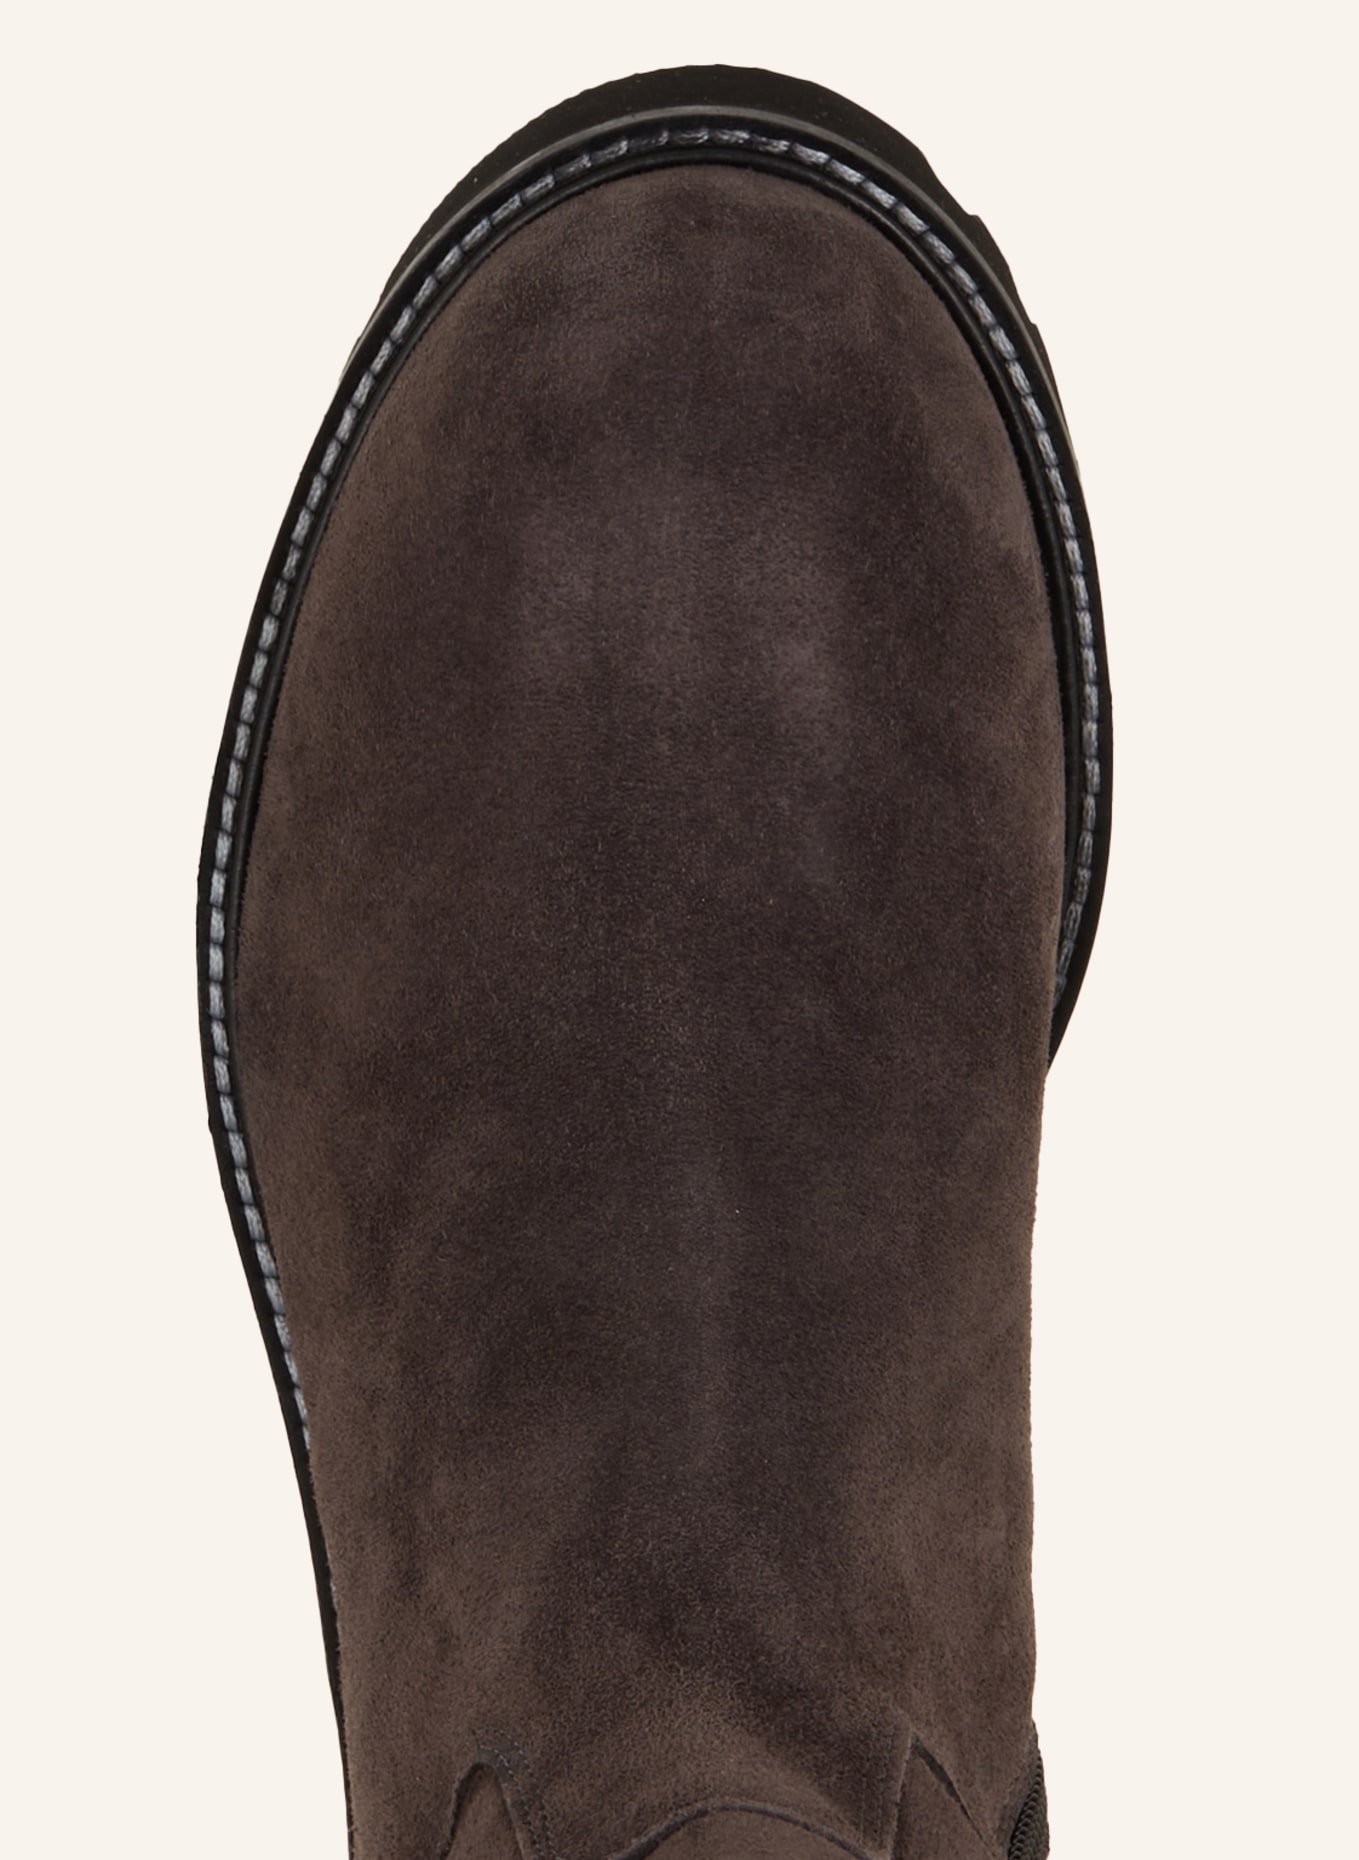 VIAMERCANTI Boots, Color: DARK GRAY (Image 6)